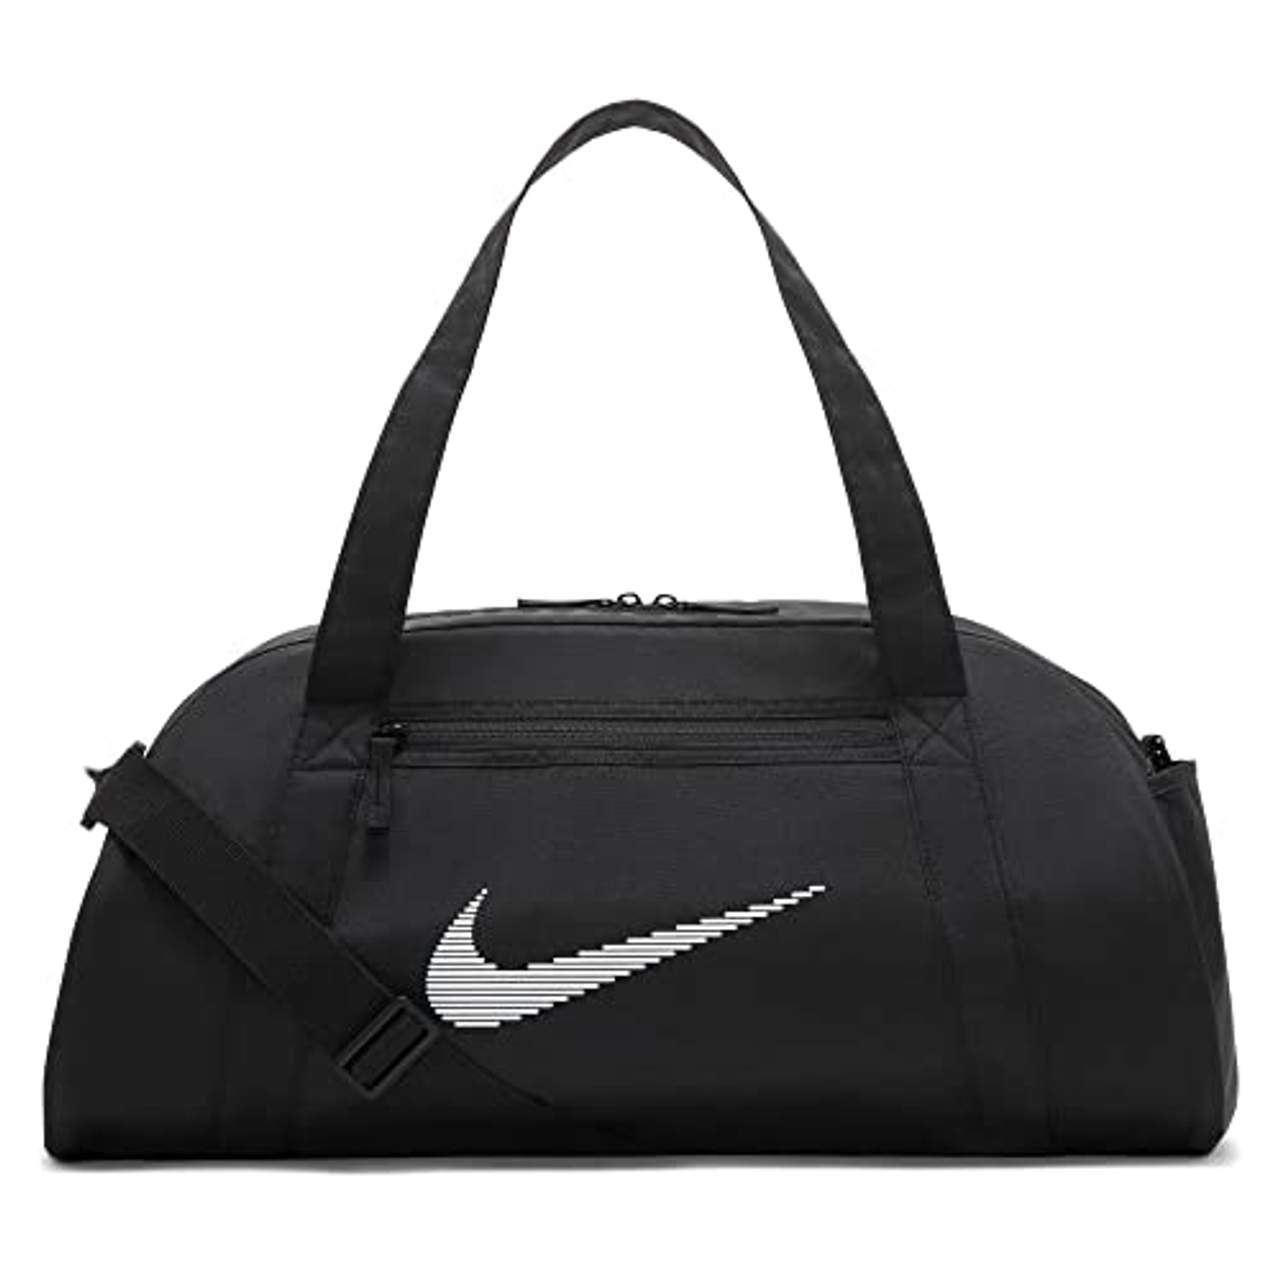 Nike Damen Sporttasche Umhängetasche Reisetasche Gym Club Bag 24L